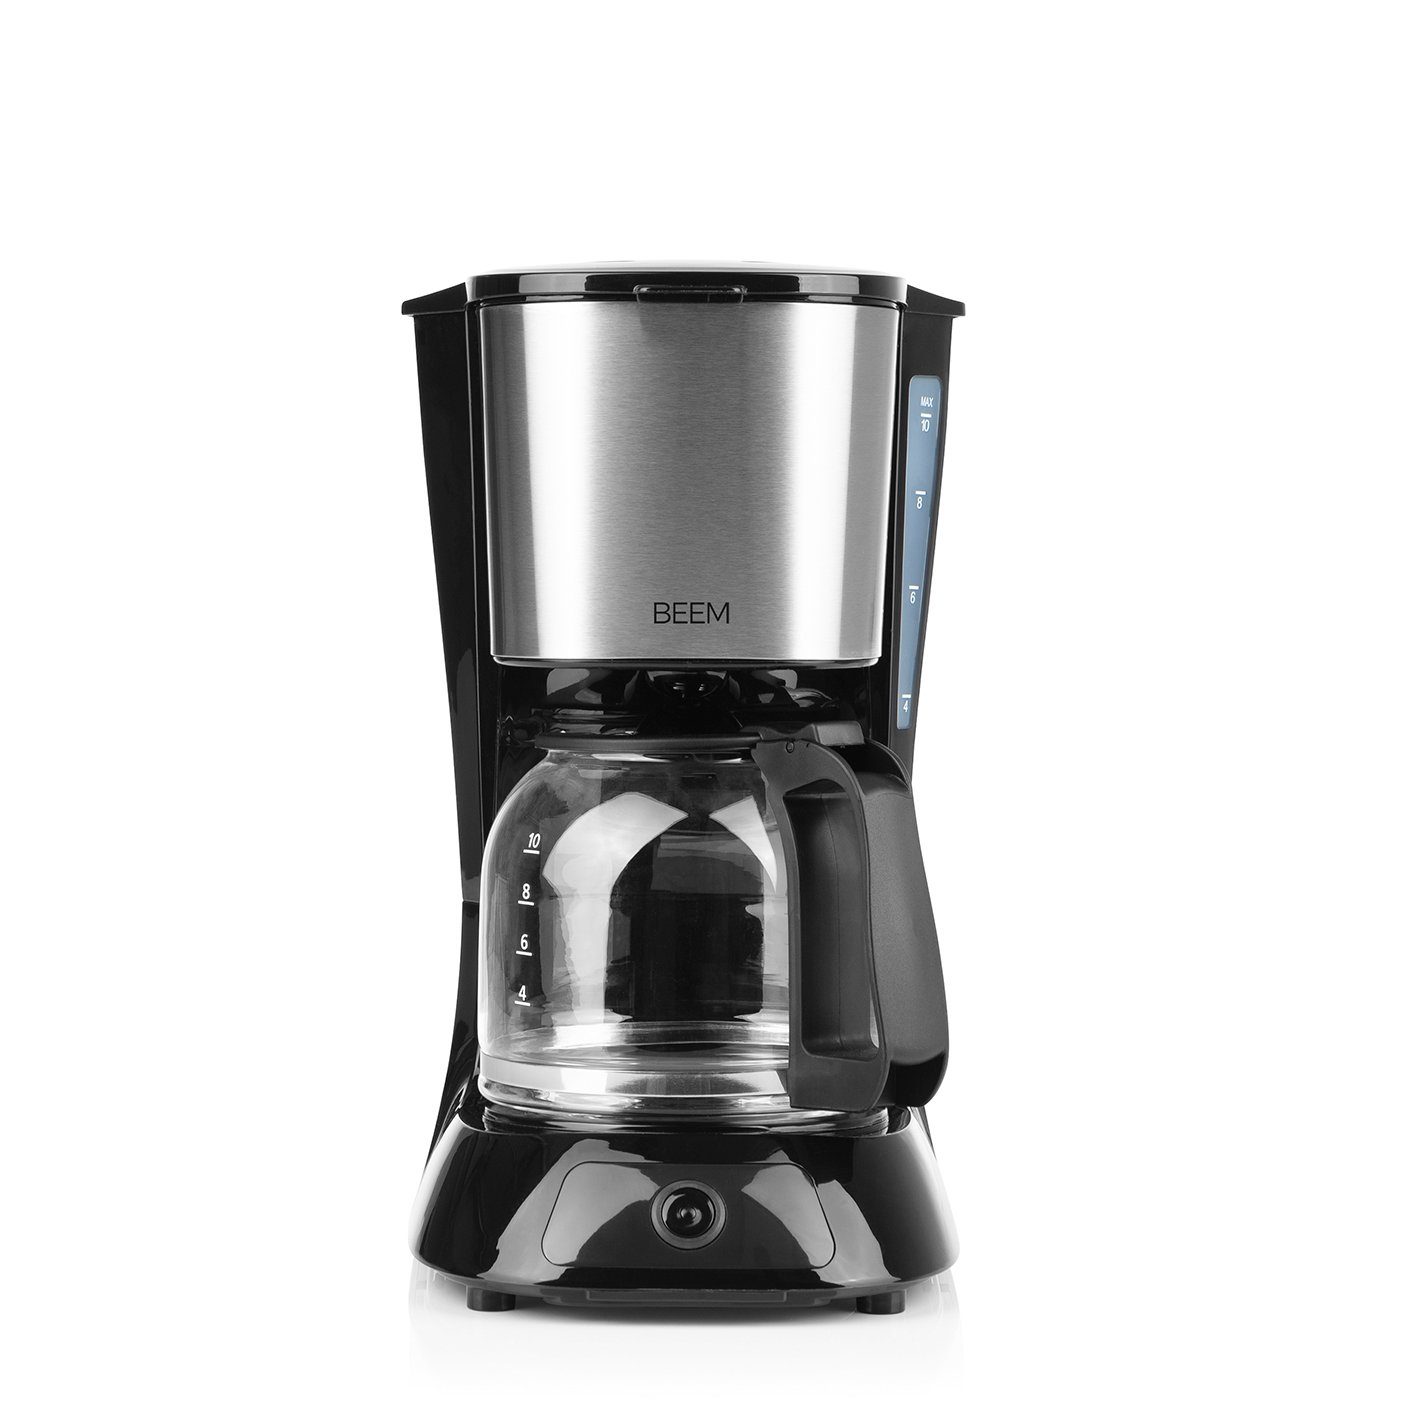 BEEM Filterkaffeemaschine FRESH-AROMA-PURE Filterkaffeemaschine Glas 900W 1,25l, 1.25l Kaffeekanne